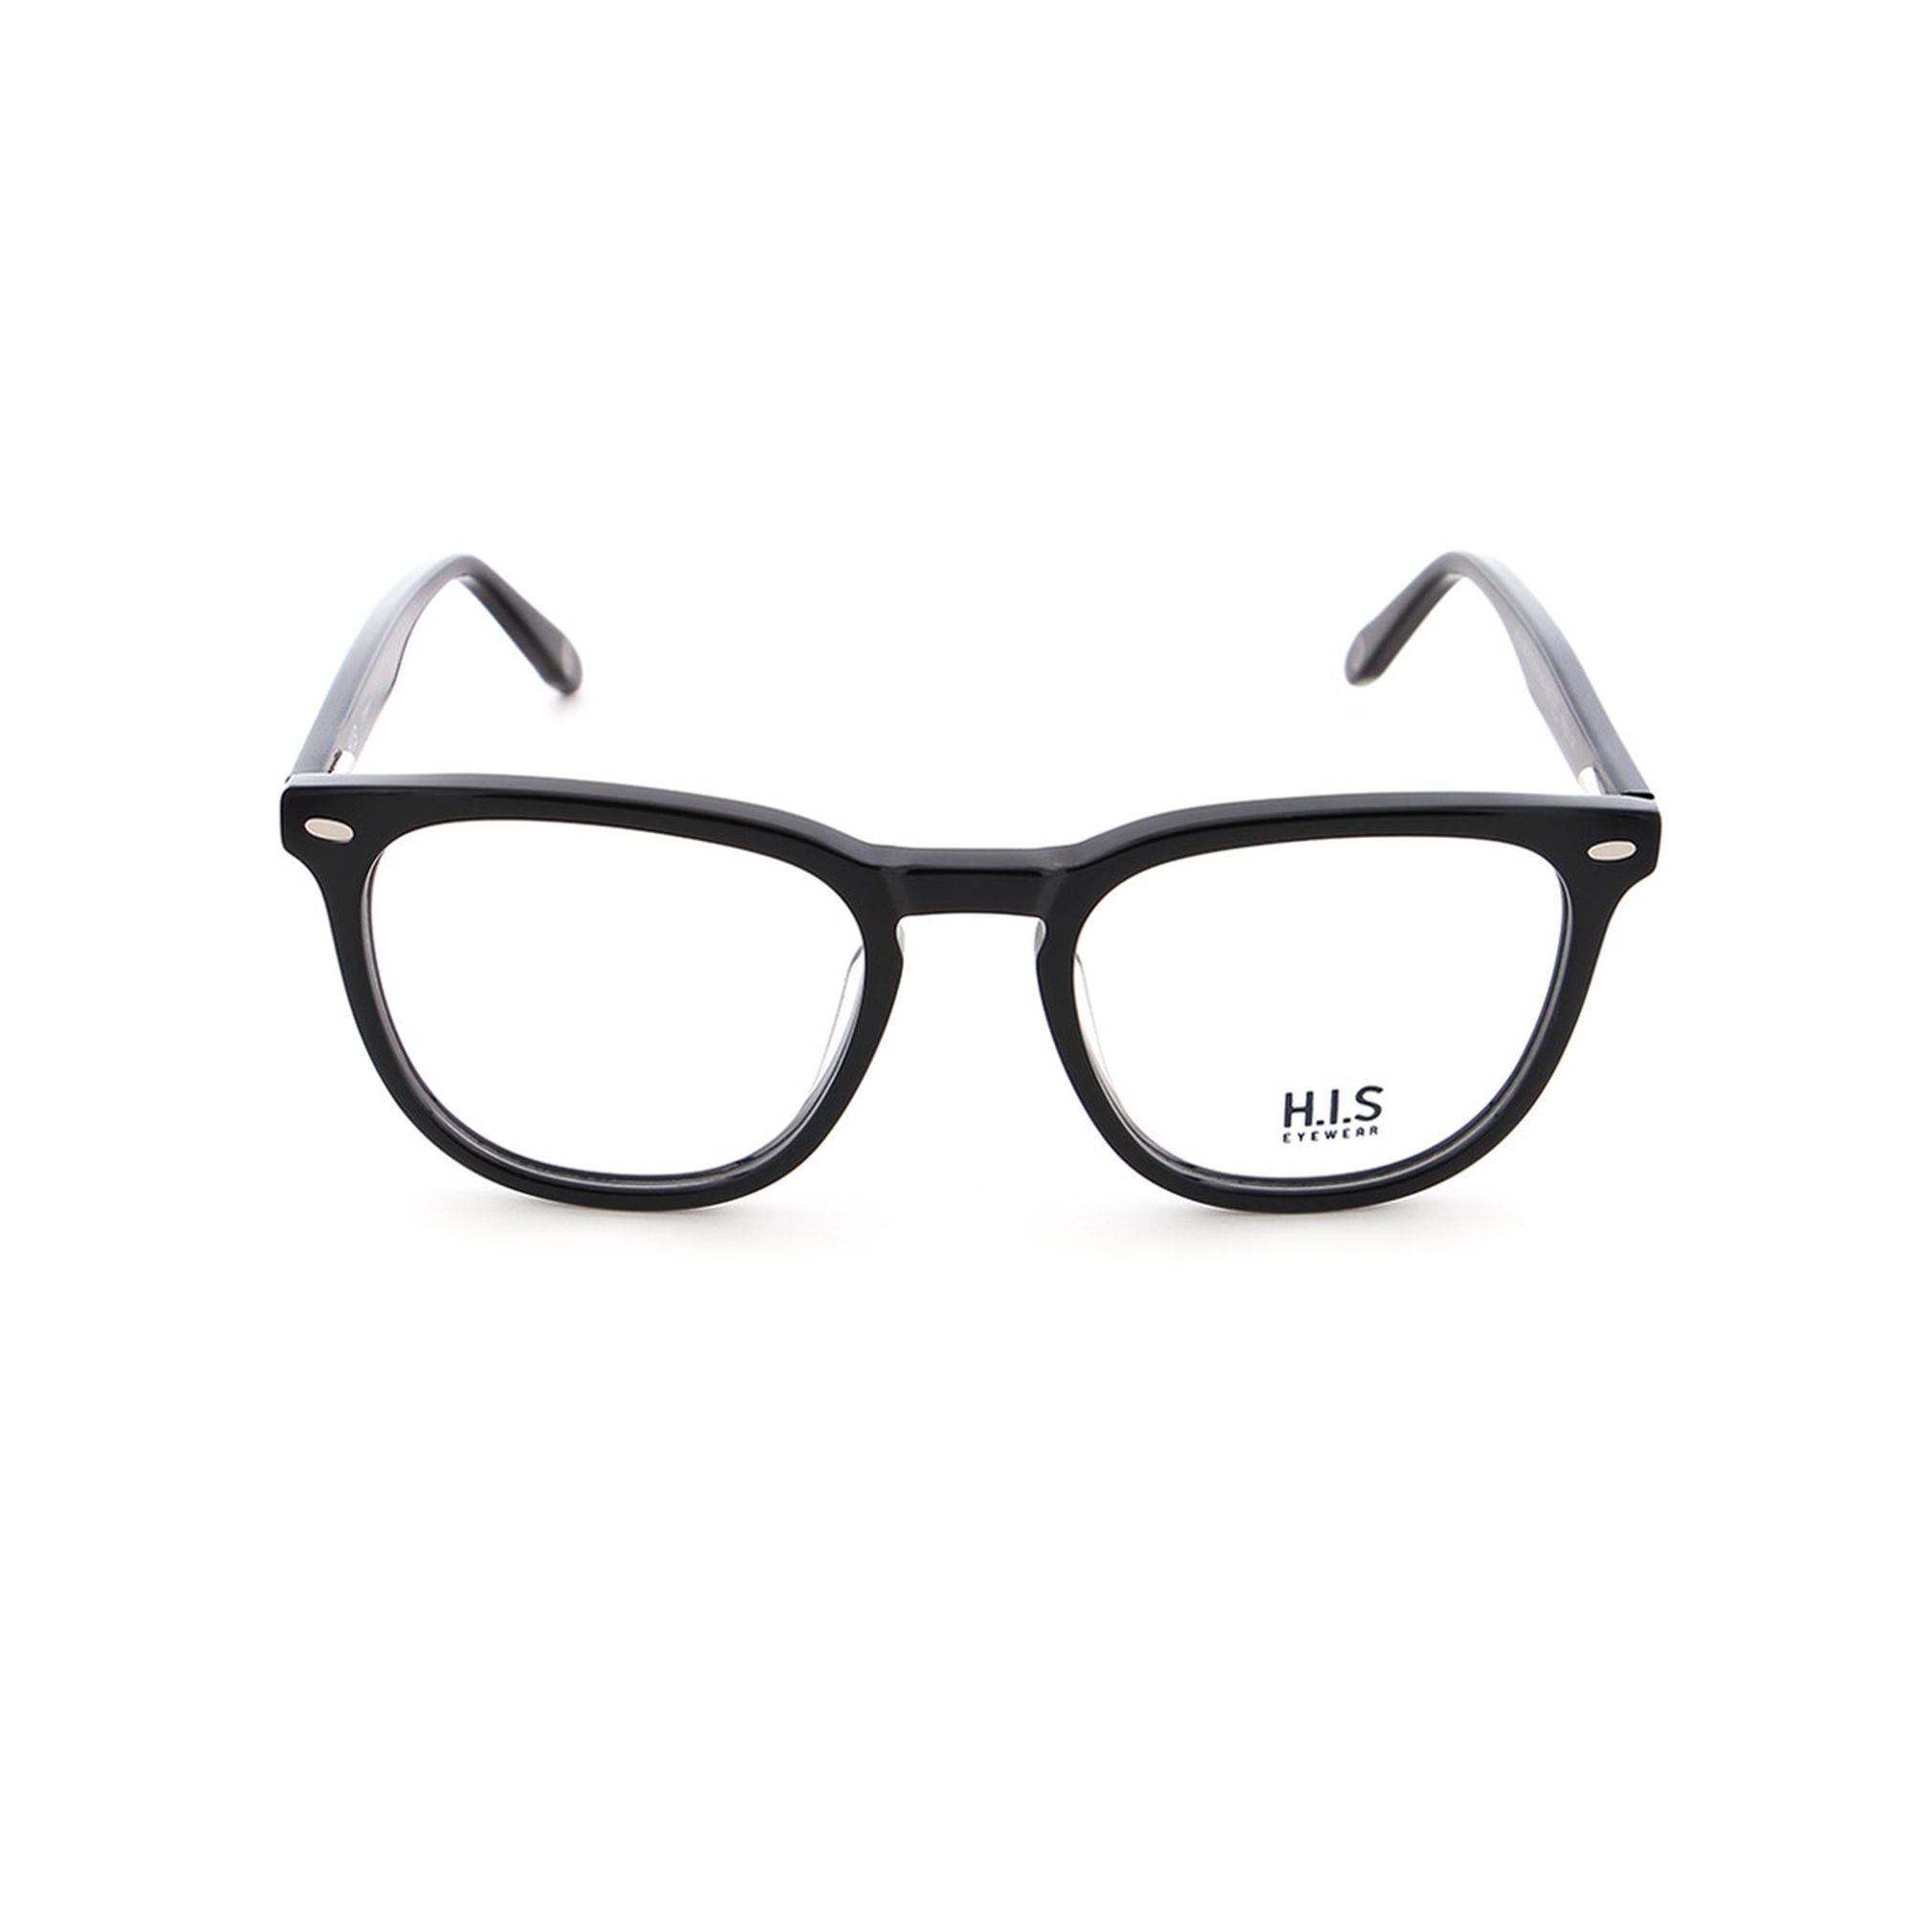 Unisexbrille H.I.S Eyewear HPL 698 Acetat günstig kaufen | Optik Wolf  Online-Shop